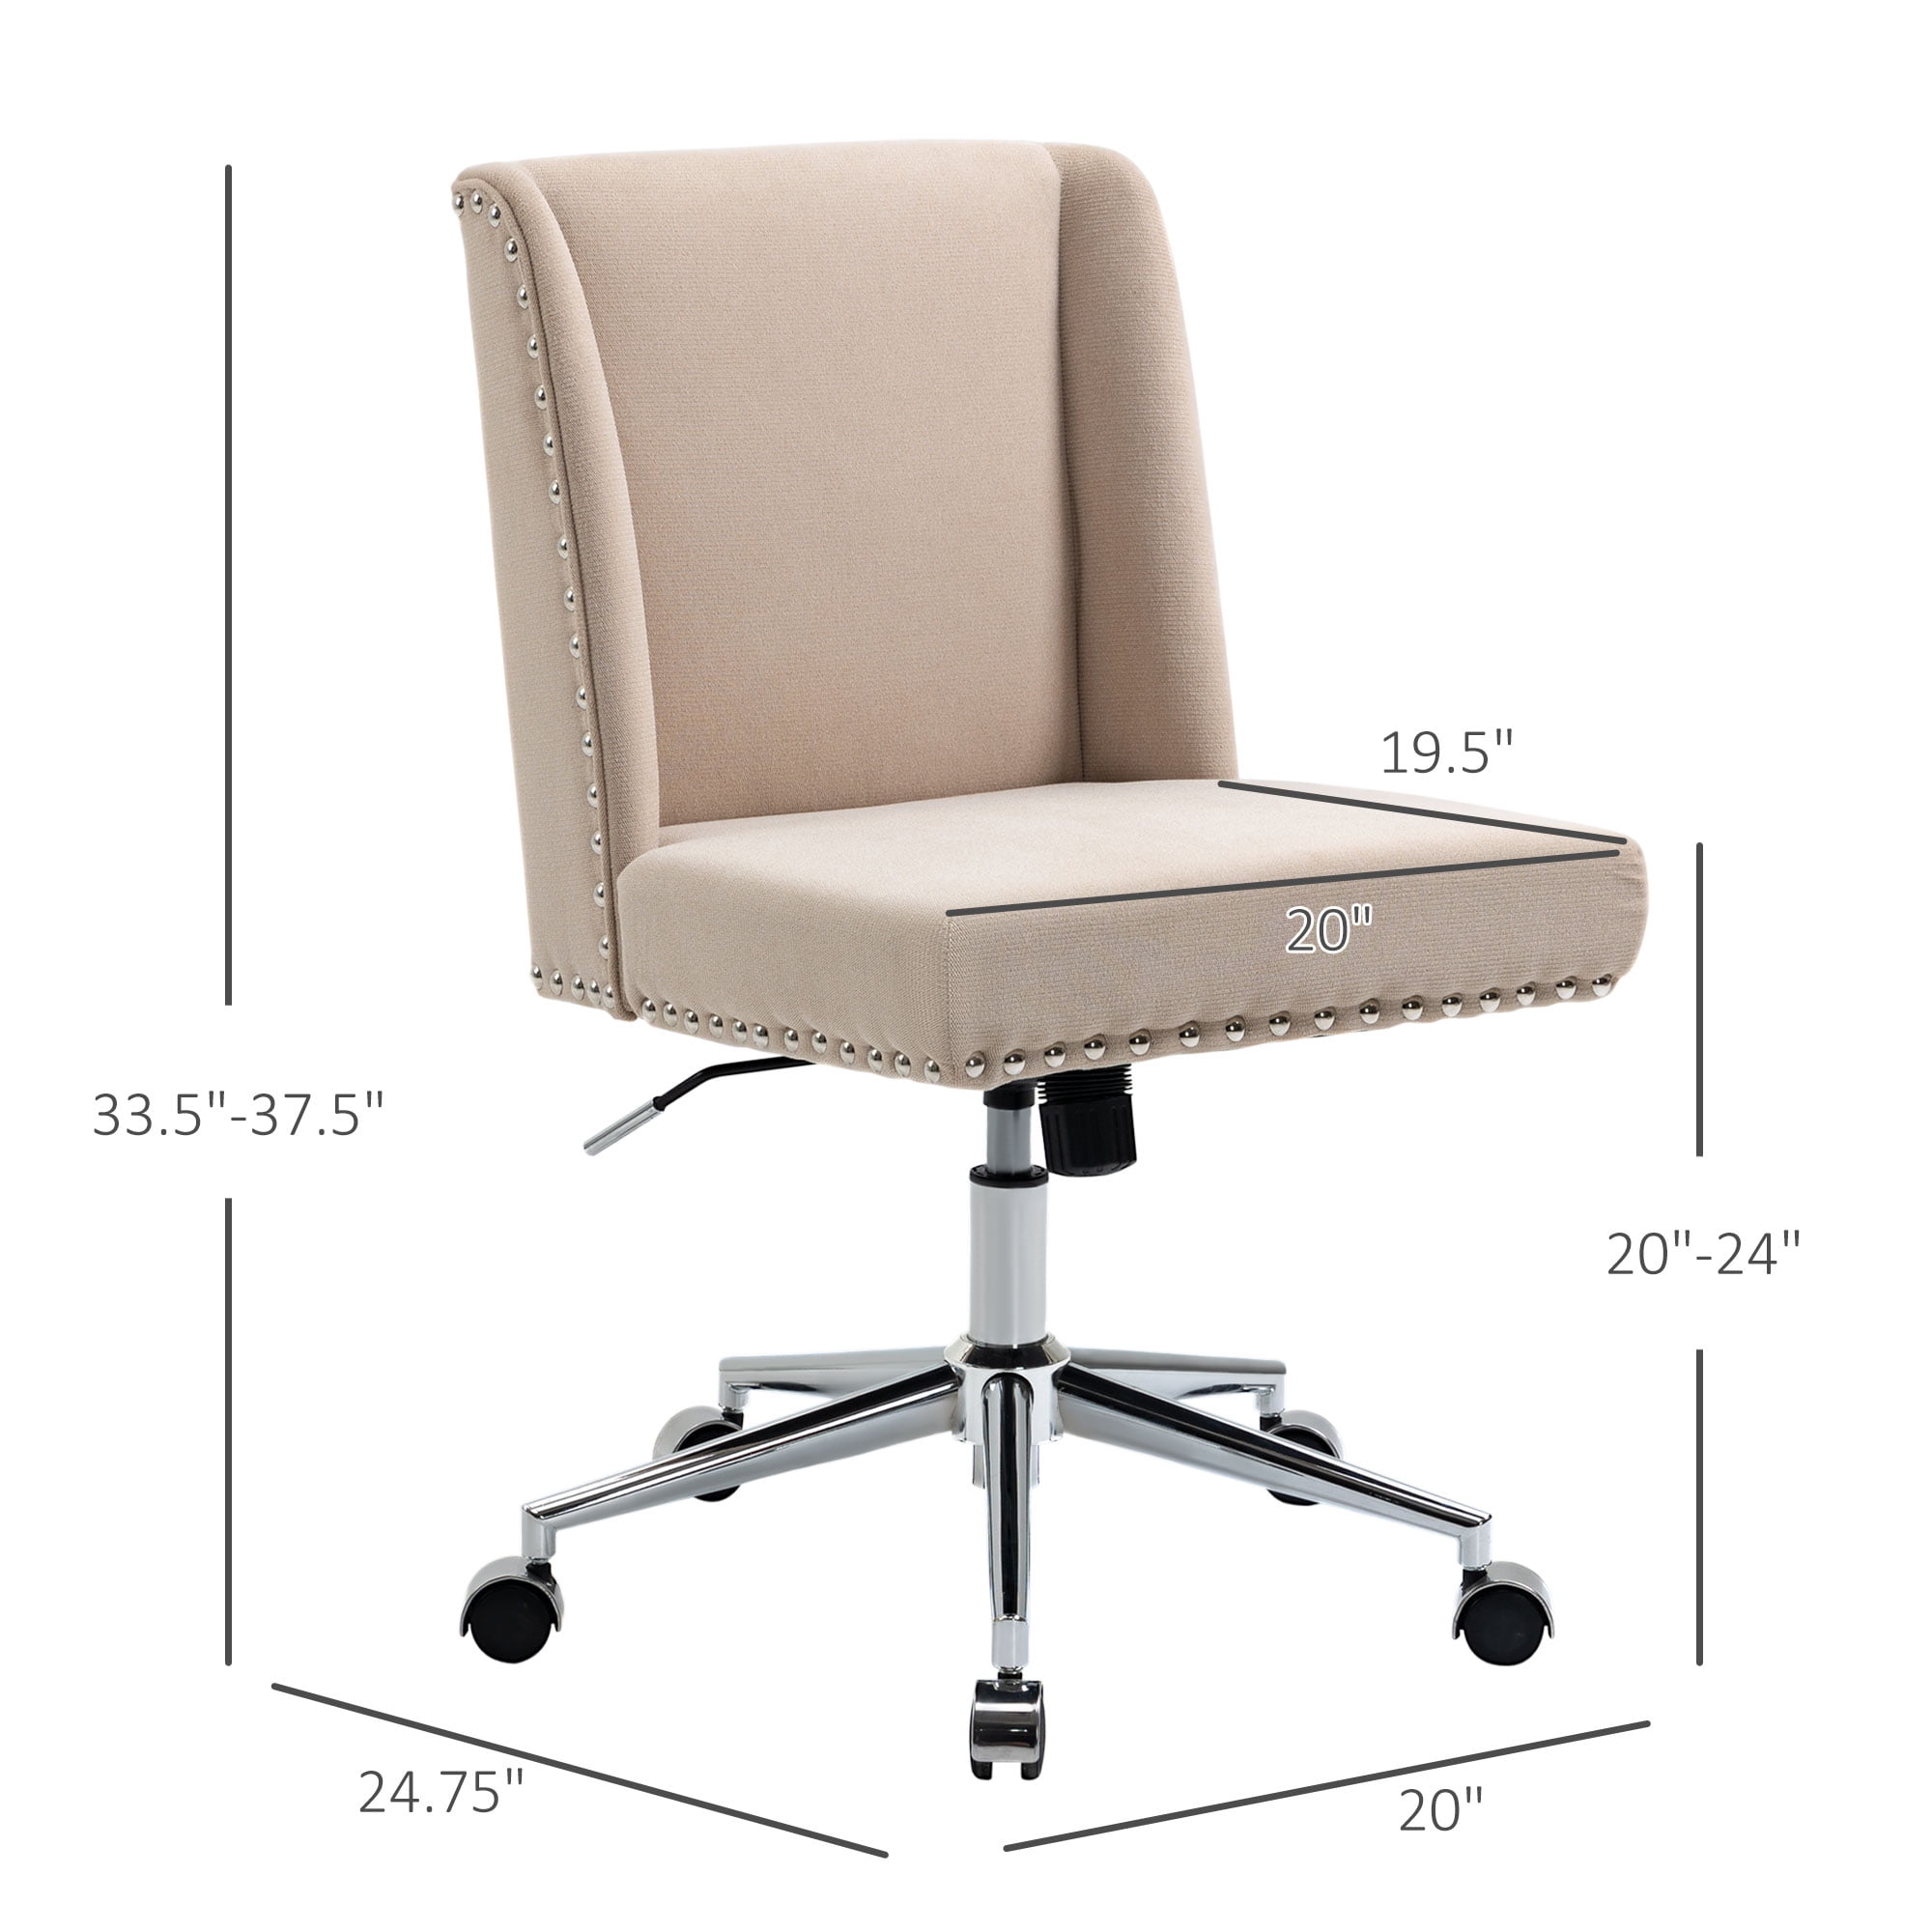 Vinsetto Office Chair High Back 360° Swivel Task Chair Ergonomic